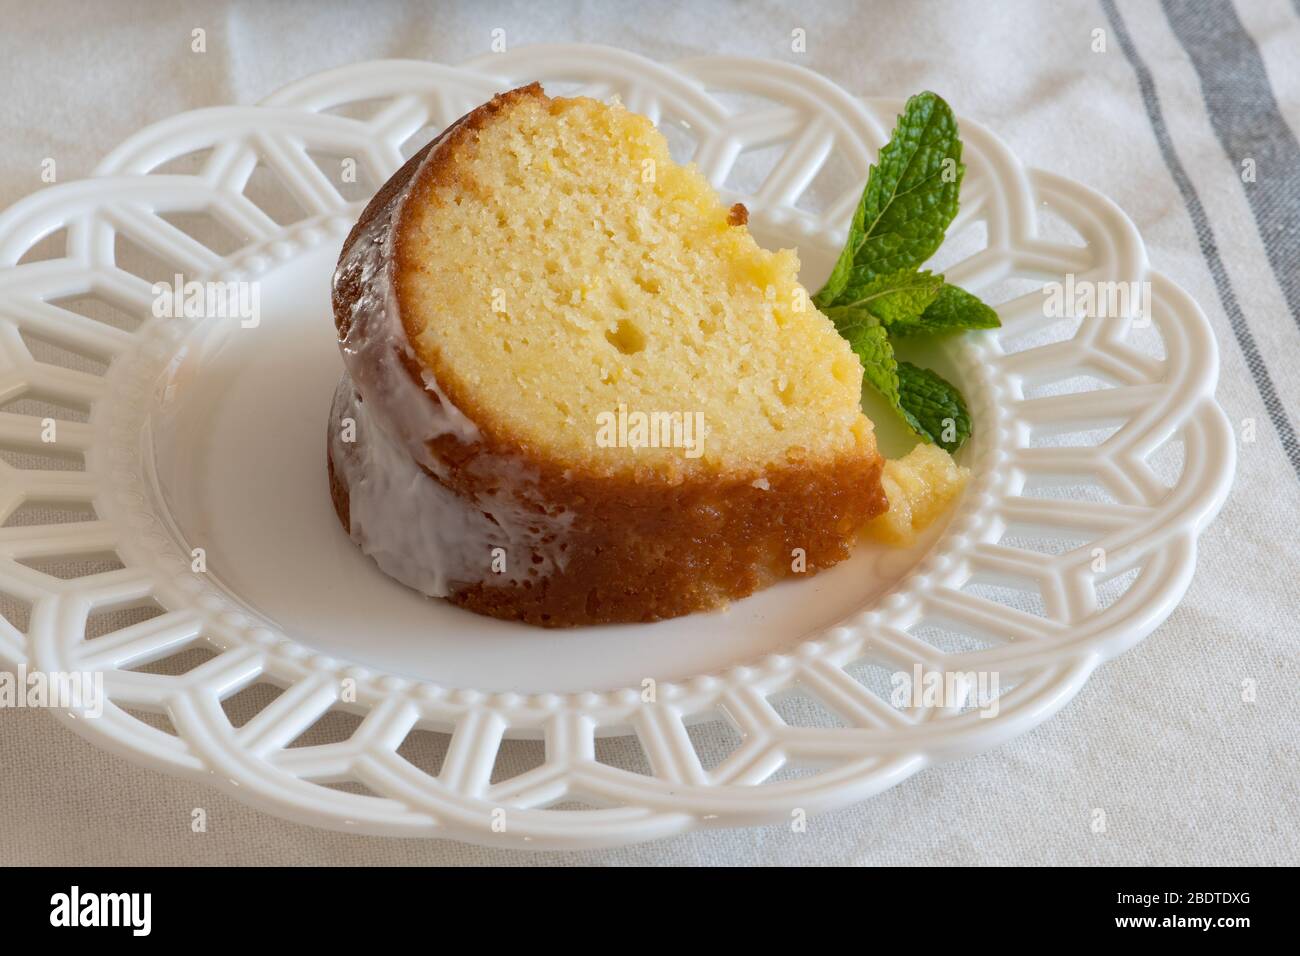 Una rebanada de tarta de limón y ricotta húmeda en un plato decorativo blanco con una guarnición de hoja de menta. Foto de stock